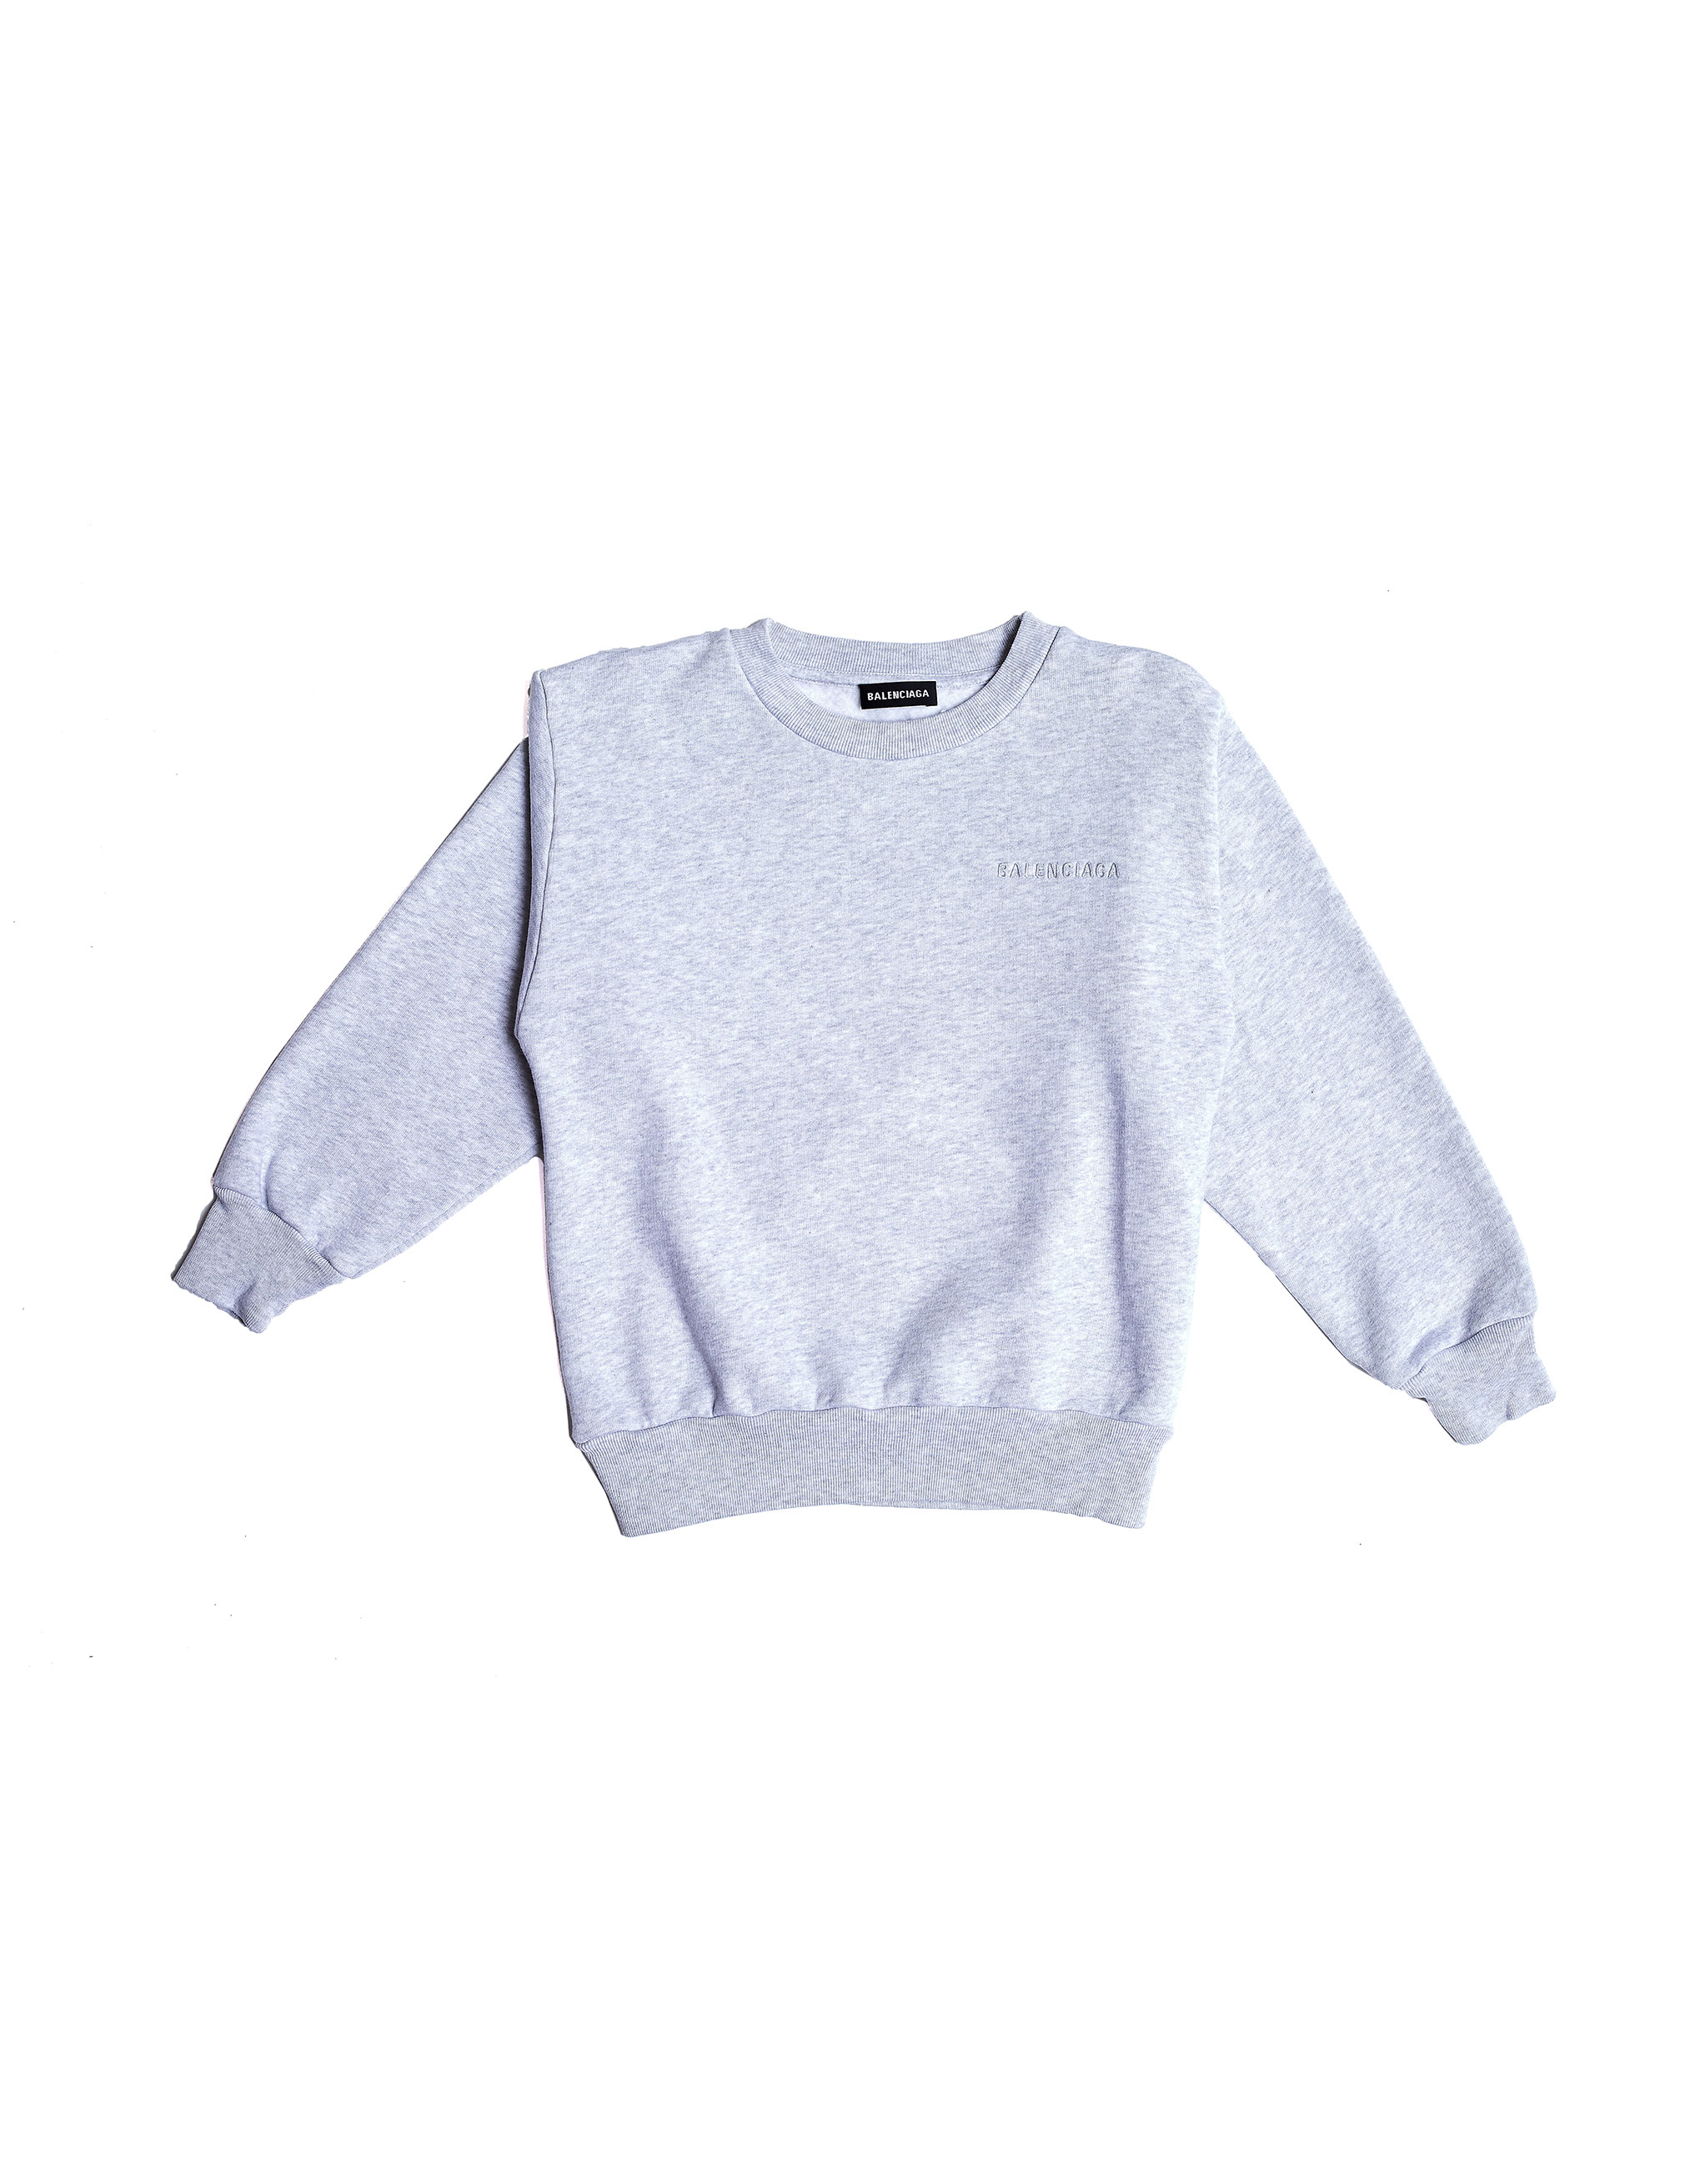 balenciaga grey logo sweater